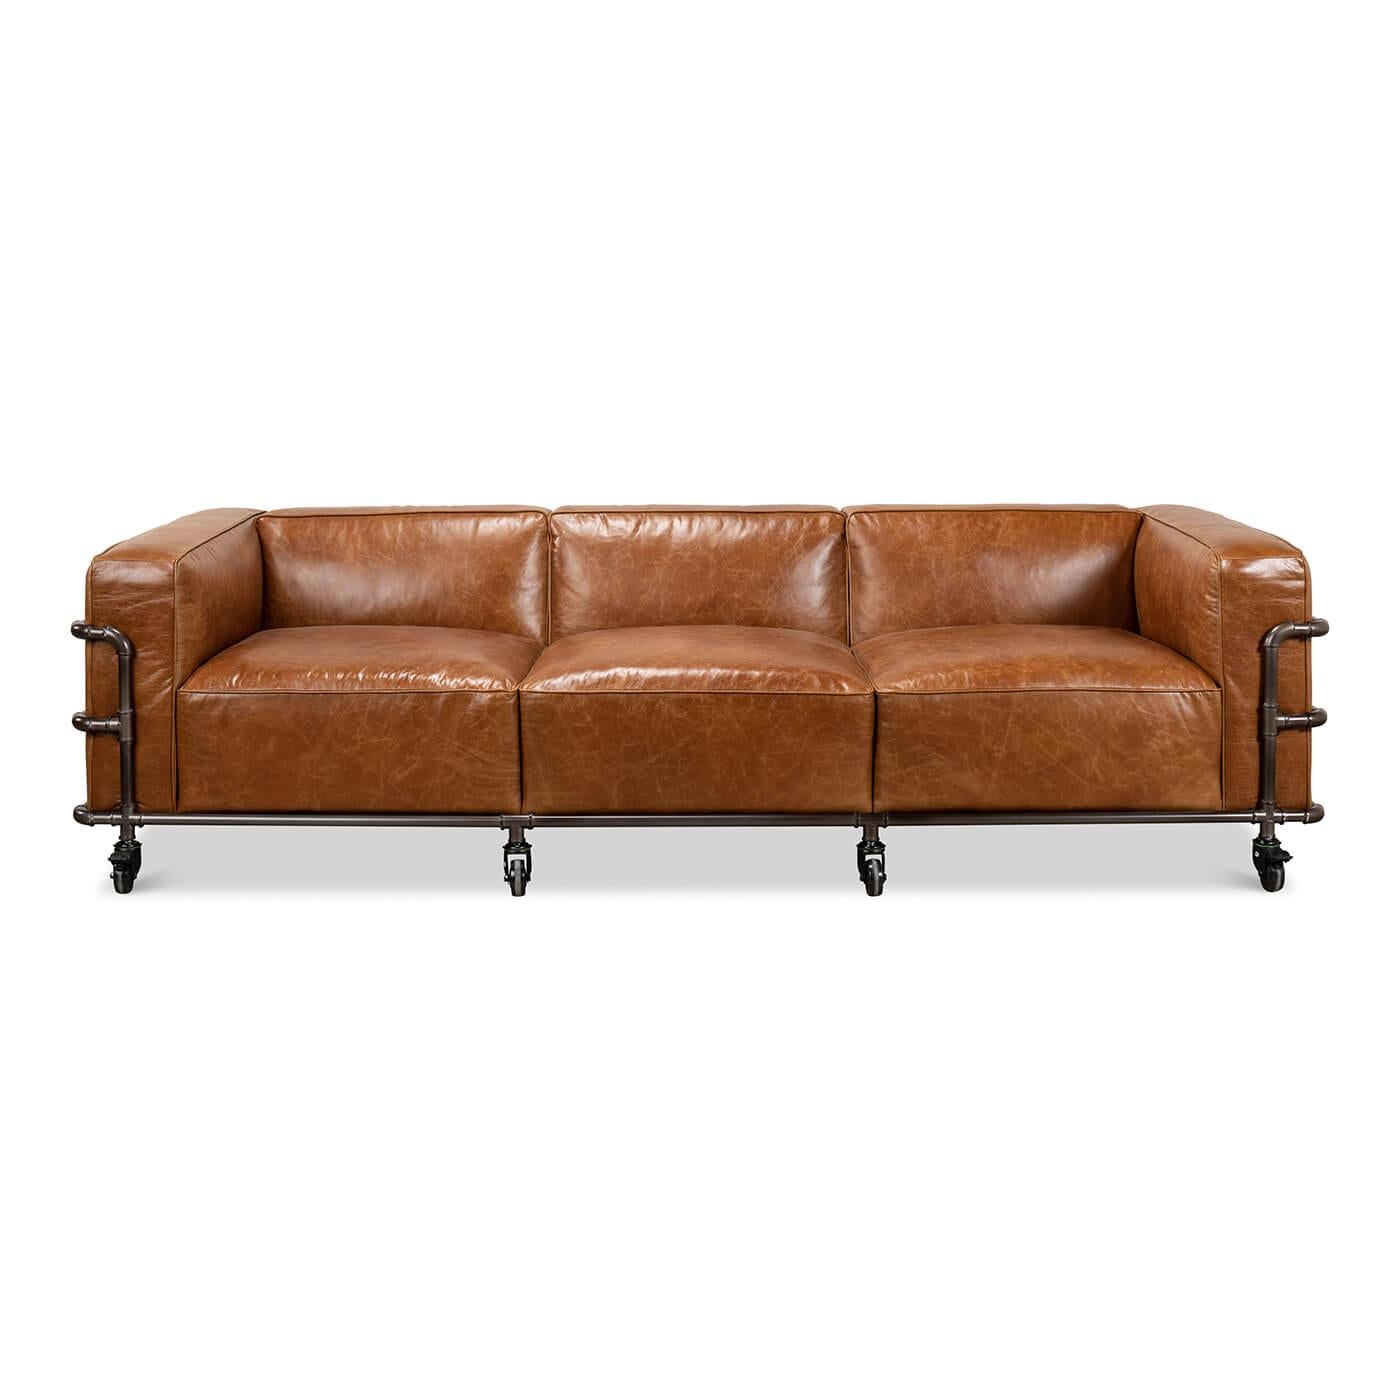 Ein modernes britisches Dreiersofa im Industrial-Stil, mit einem Industrial-Außenrahmen und großen Industrial-Rädern. Das Sofa ist mit hochwertigem braunem Anilinleder im Vintage-Stil gepolstert. 

Abmessungen: 102